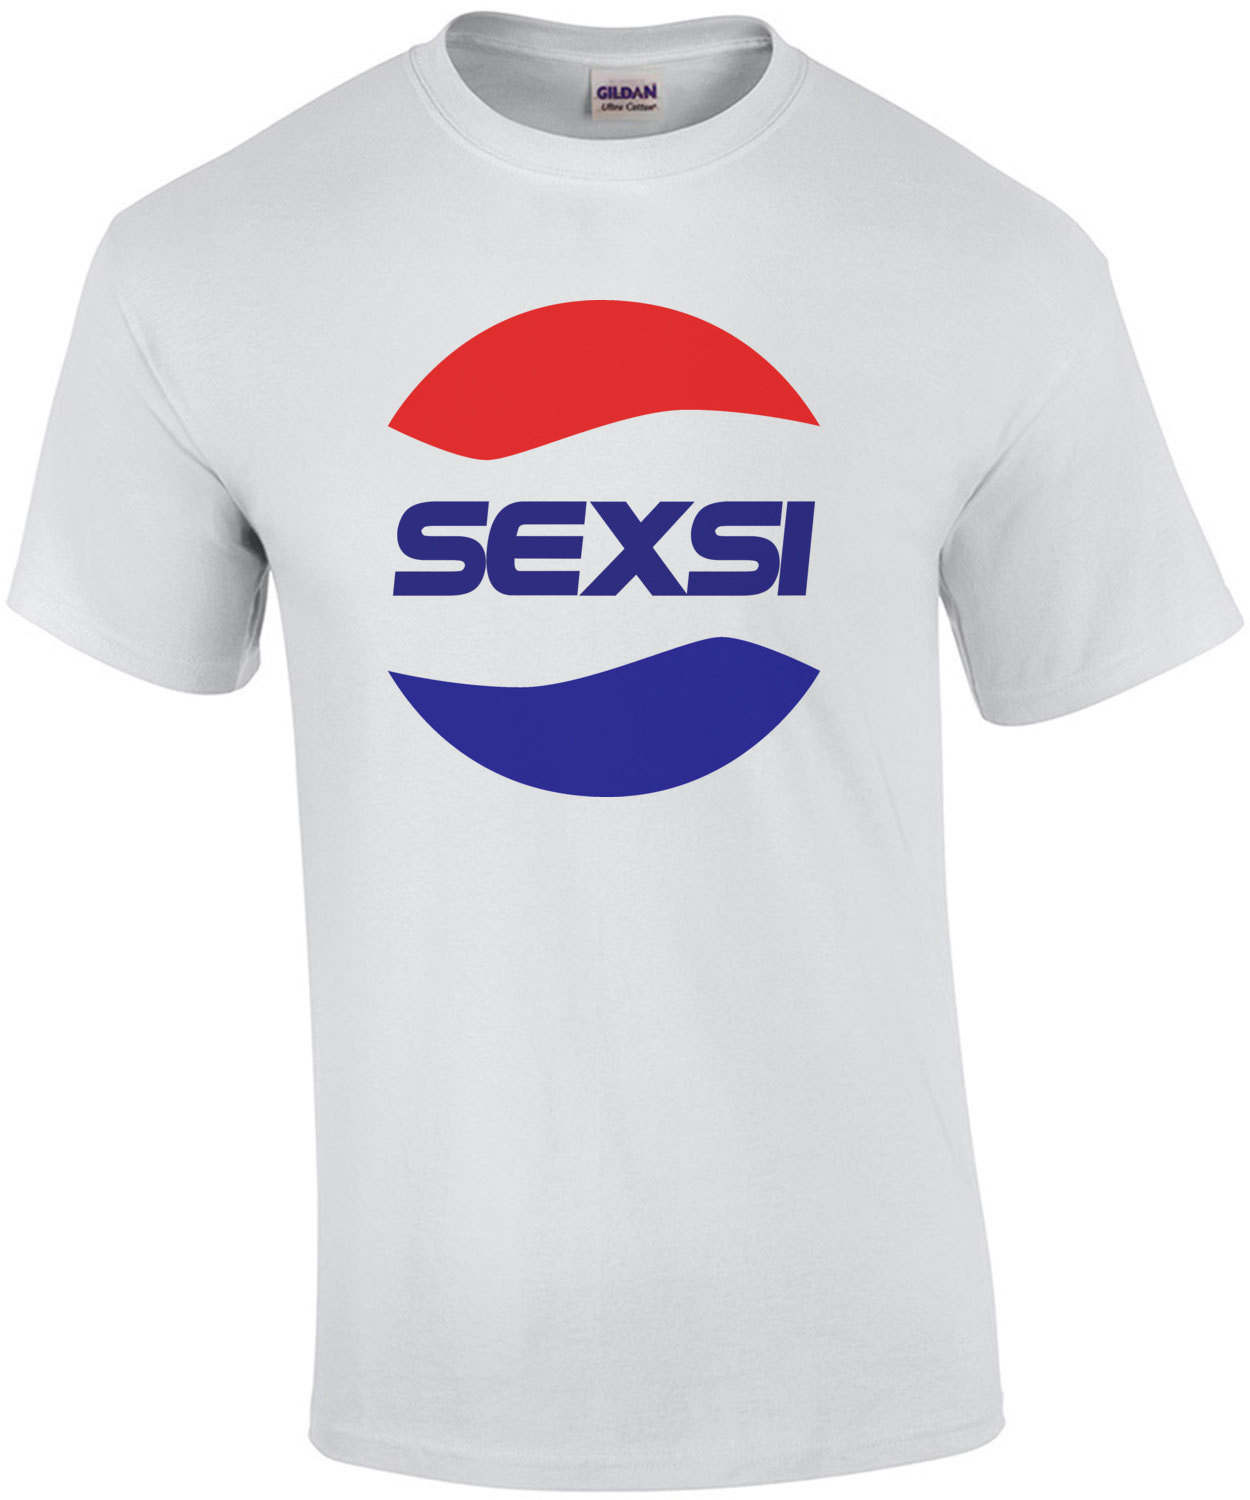 Sexsi - Pepsi Parody T-Shirt